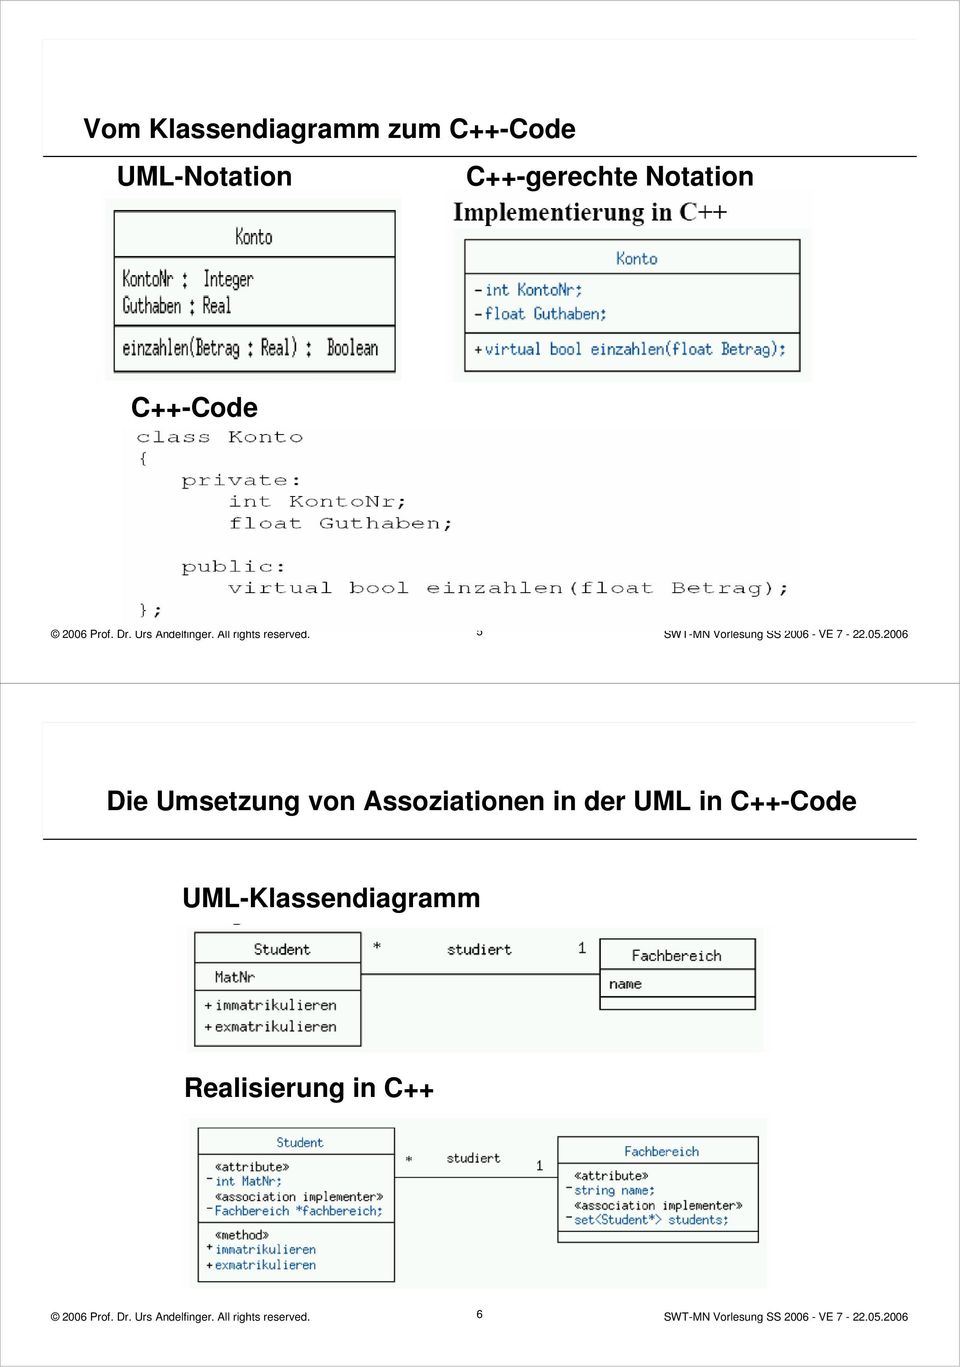 5 Die Umsetzung von Assoziationen in der UML in C++-Code